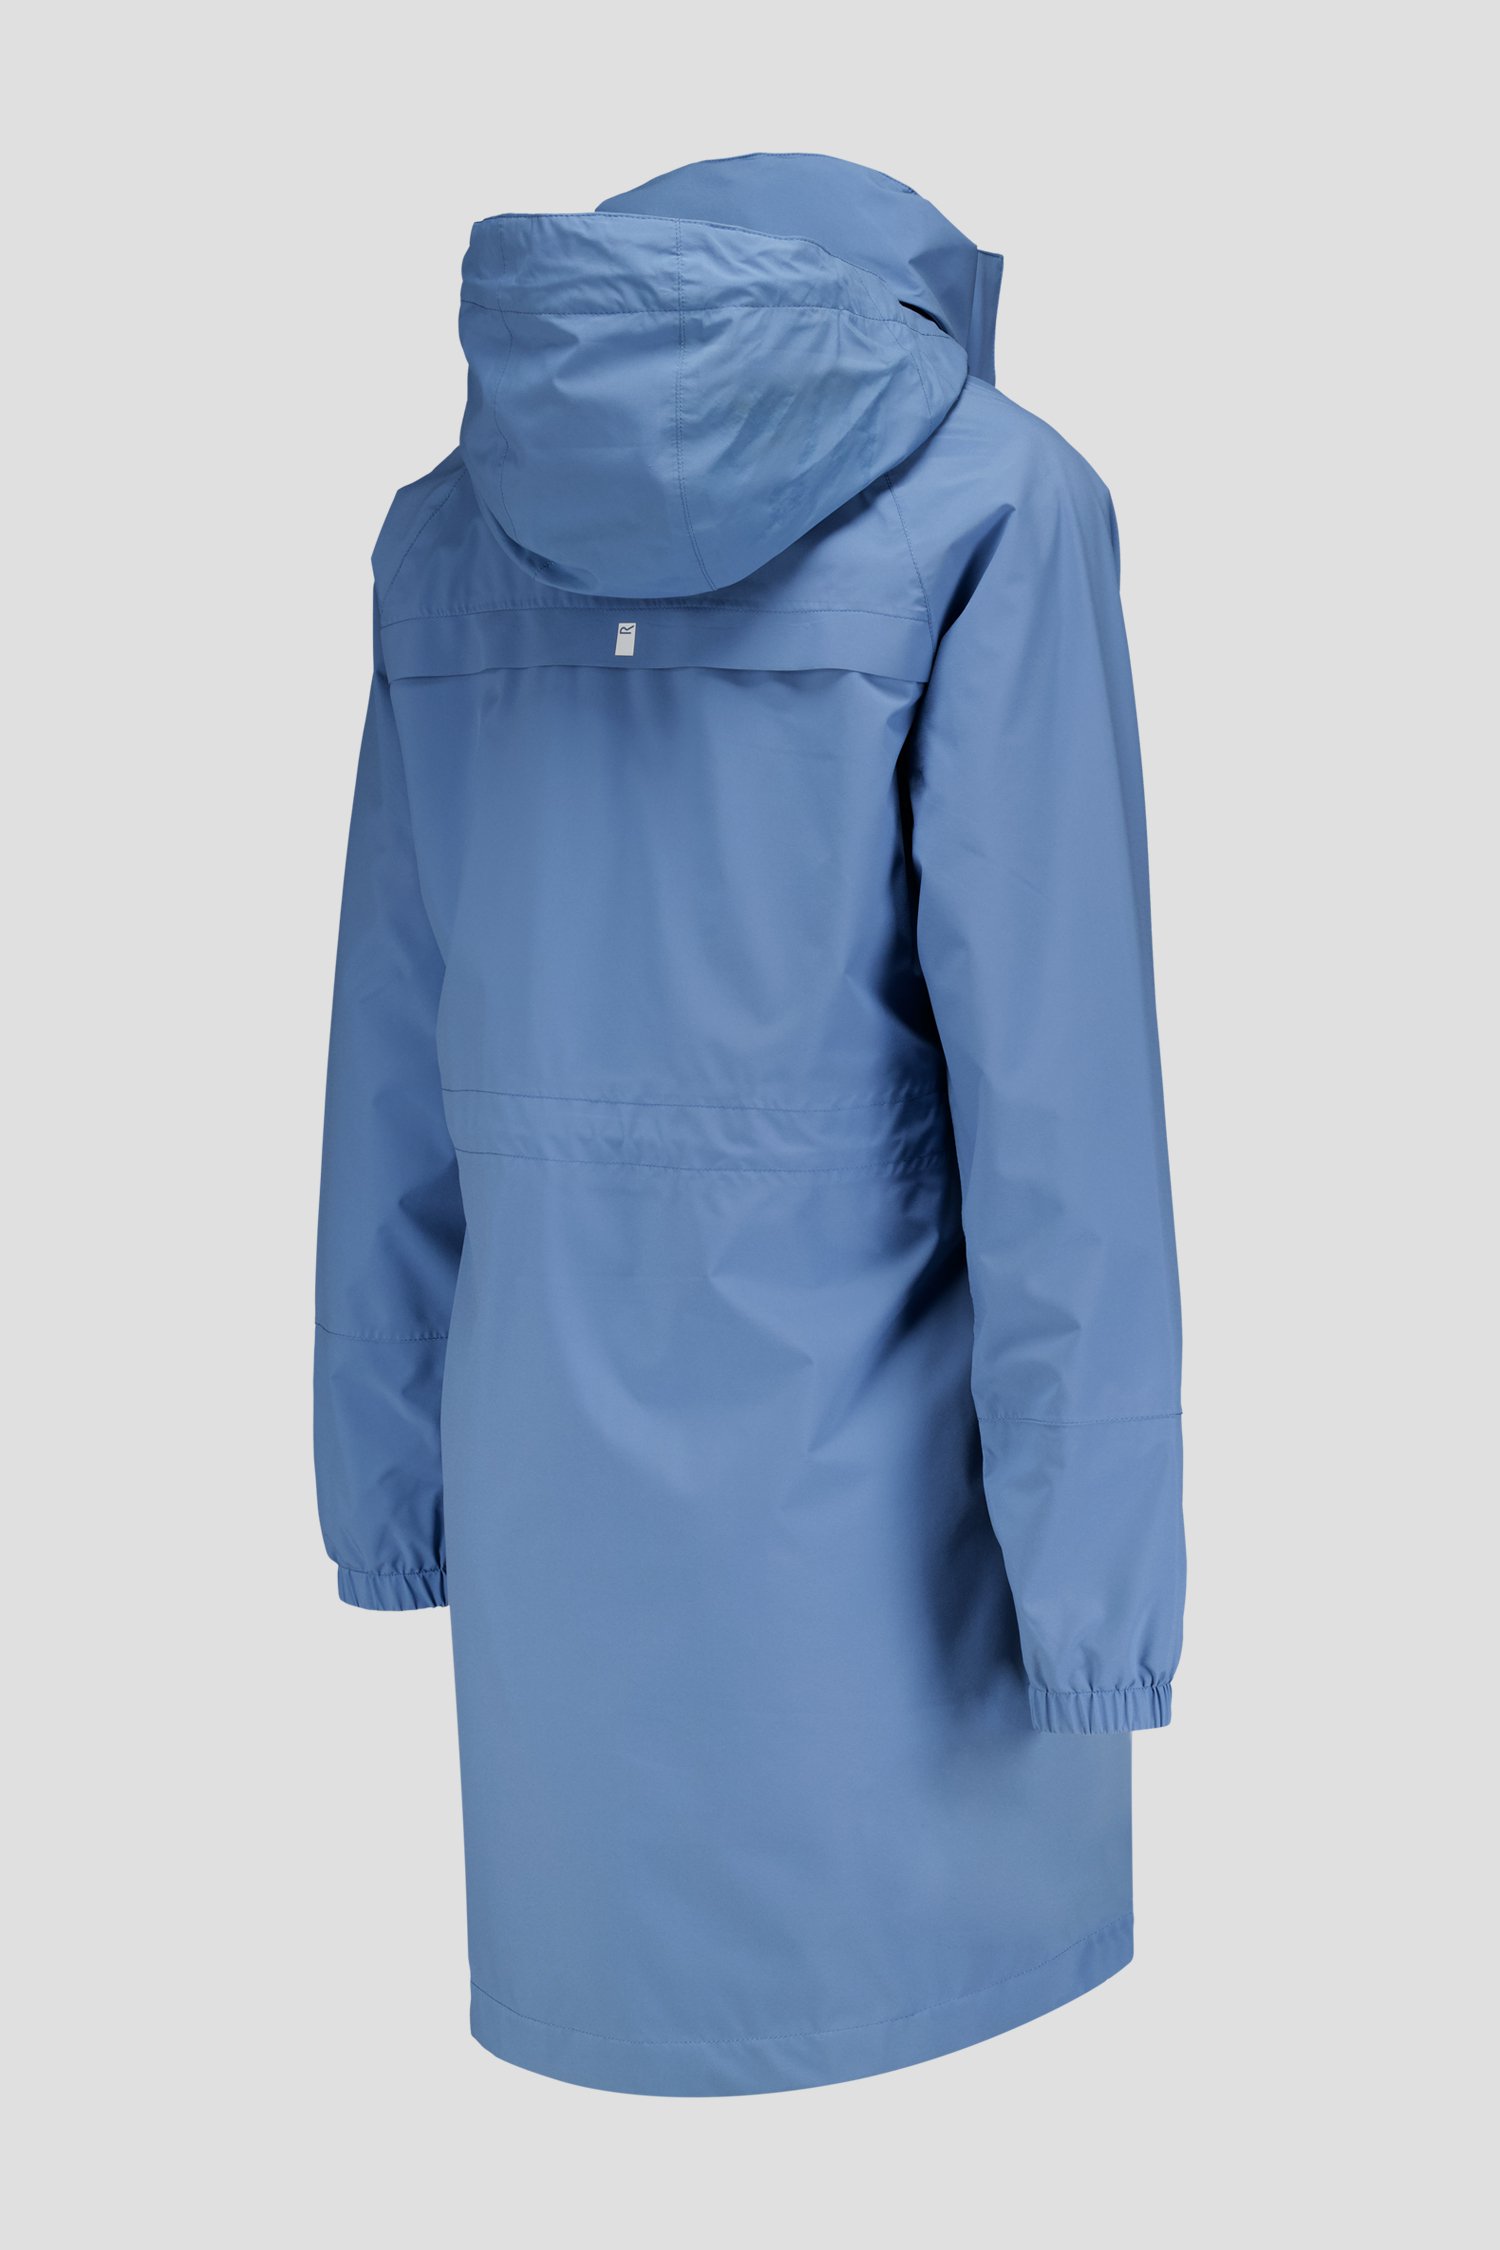 Blauwe regenjas van Regatta voor Dames